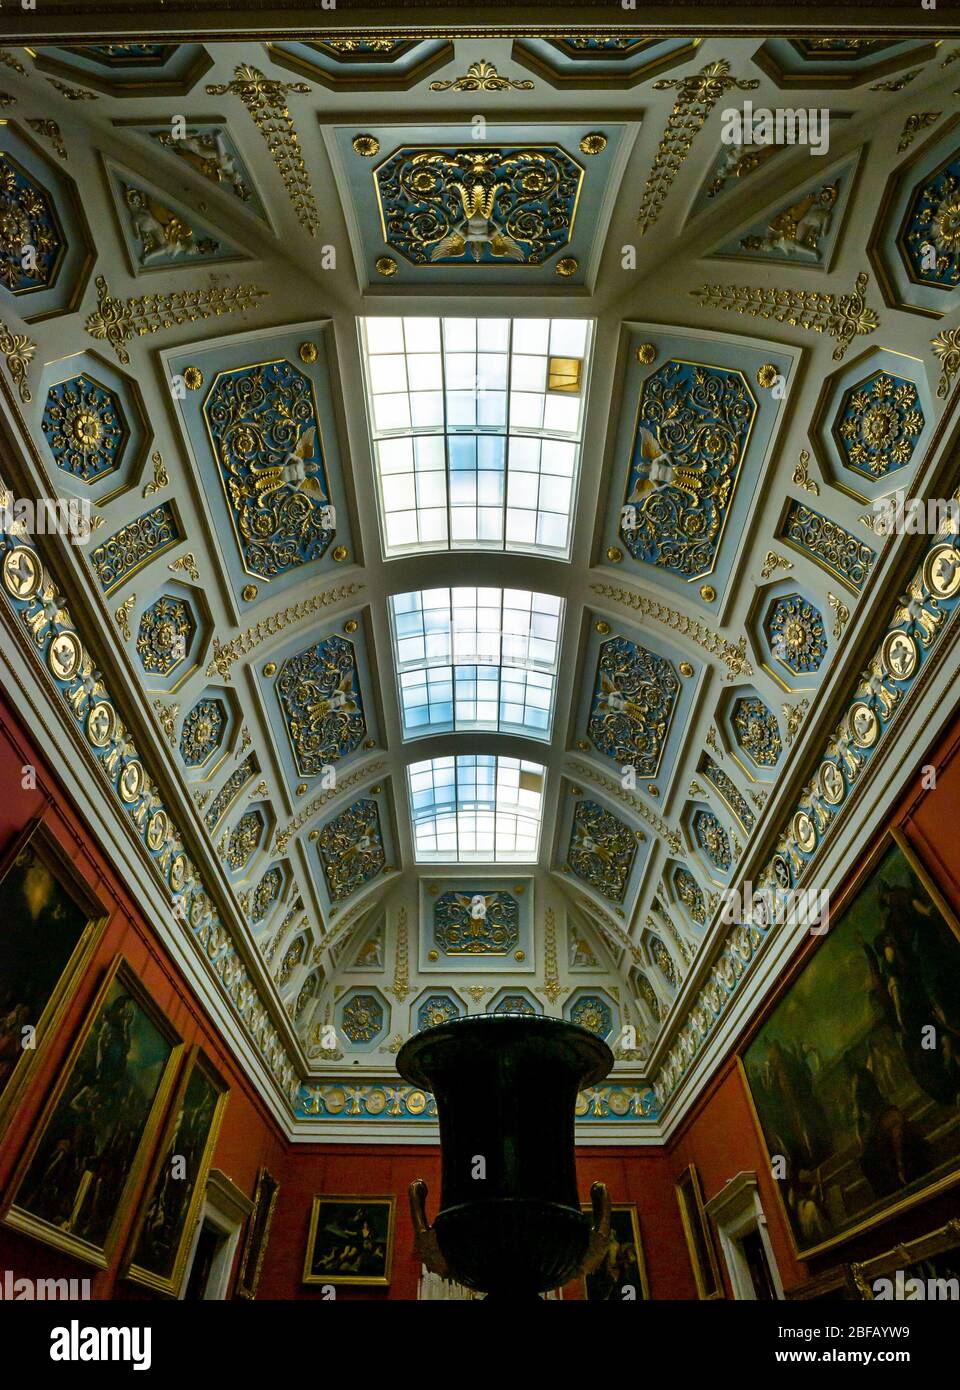 Decke des italienischen Dachlukensaals, Eremitage State Museum, St. Petersburg, Russische Föderation Stockfoto